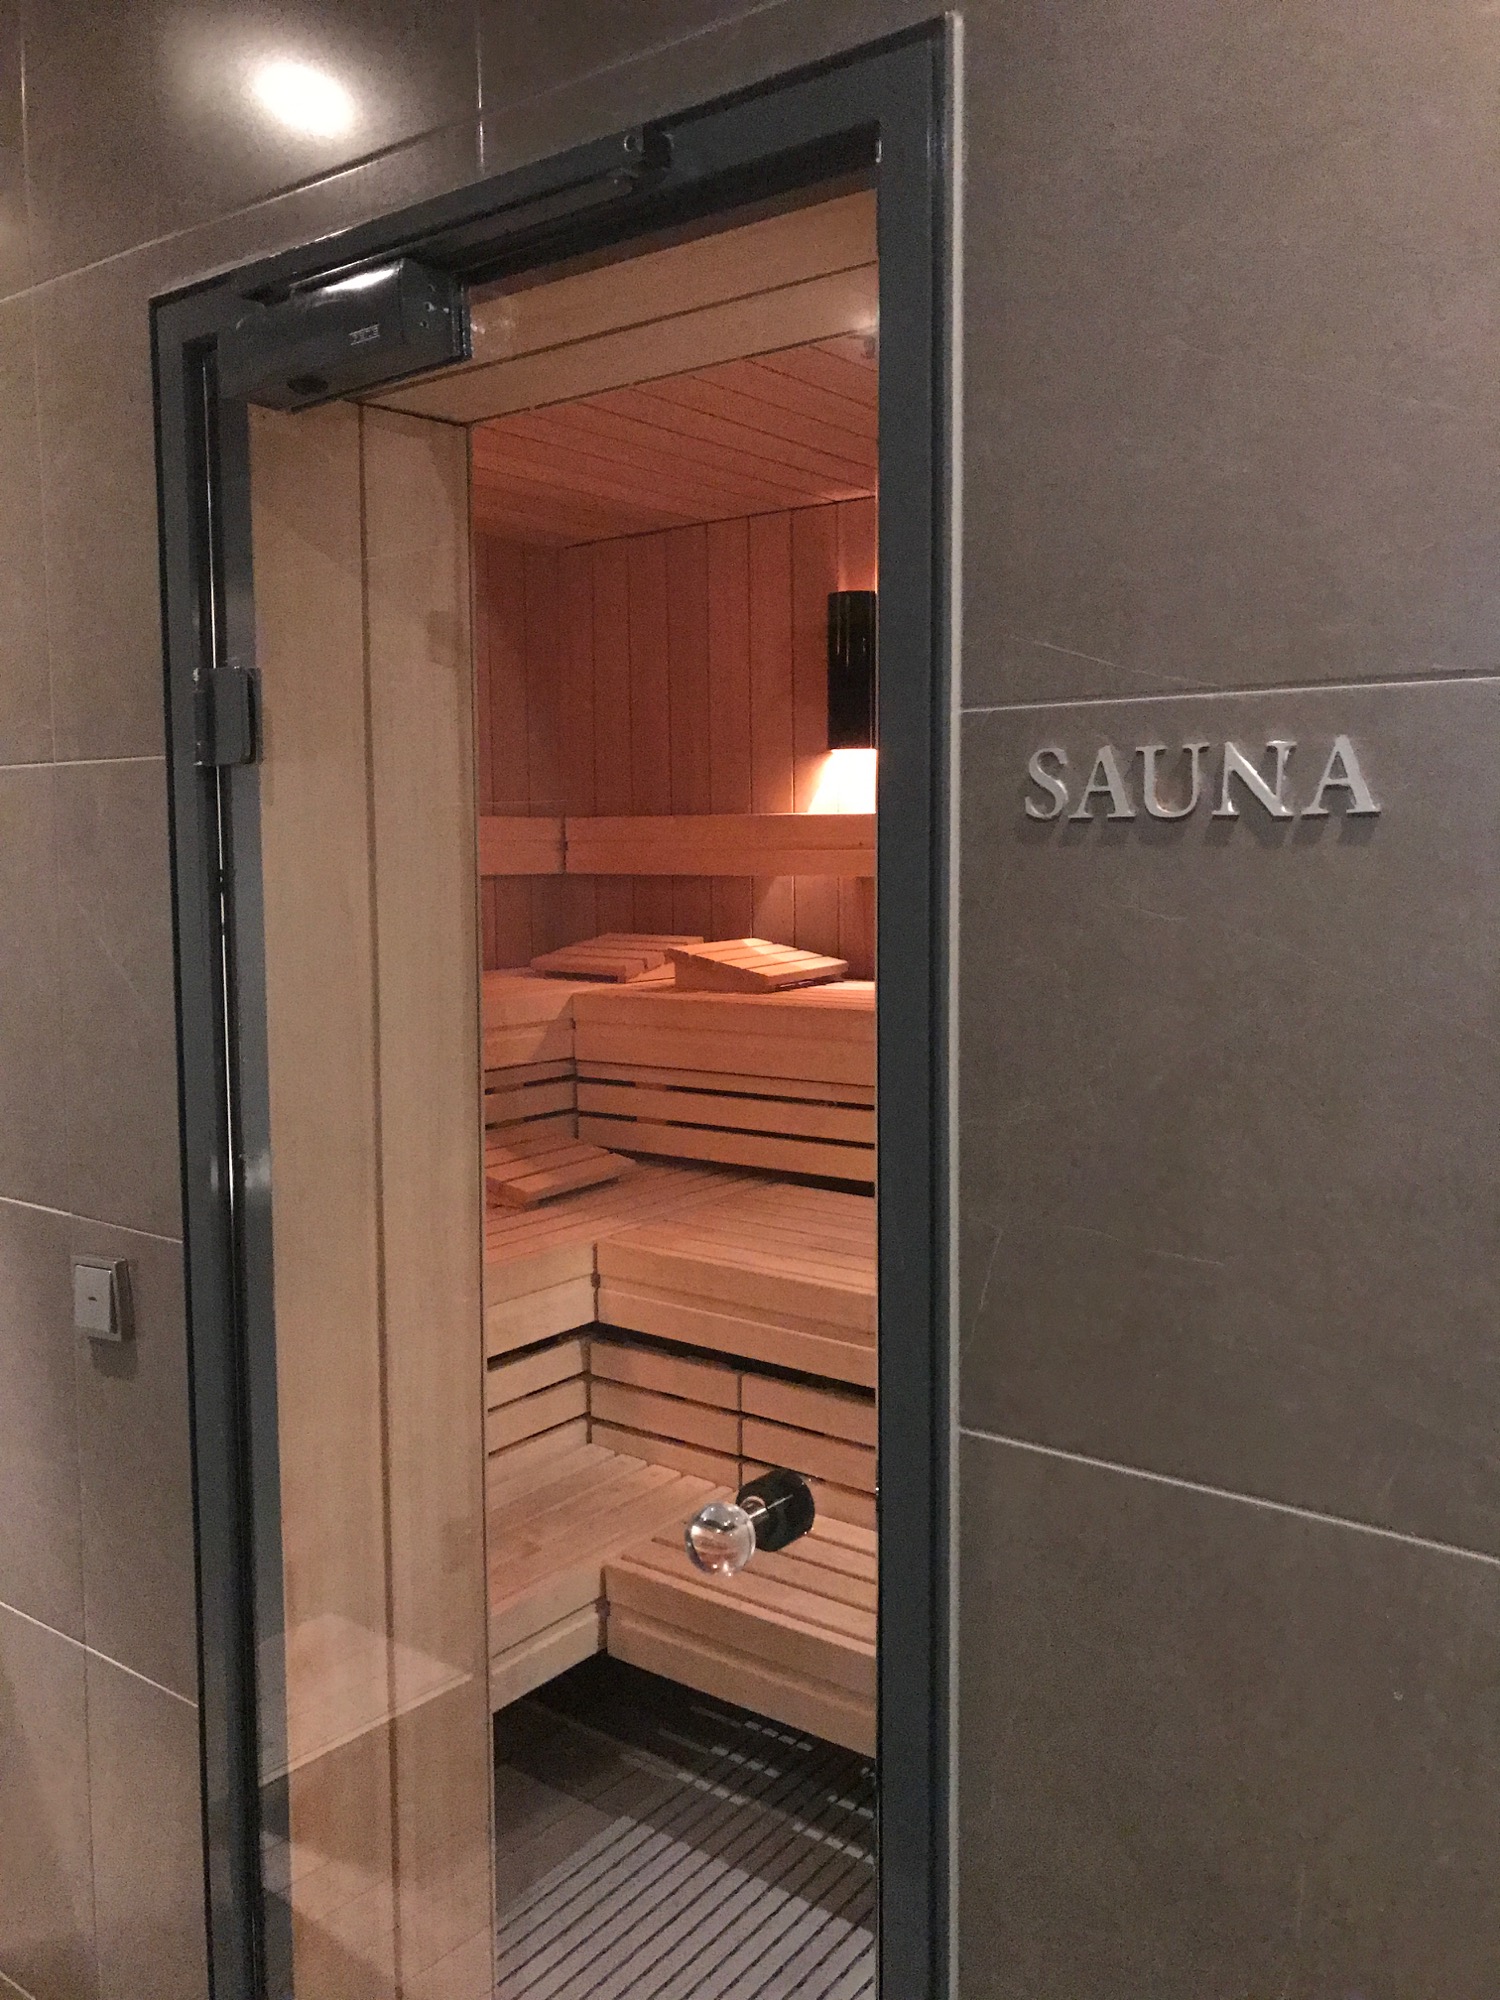 a door to a sauna